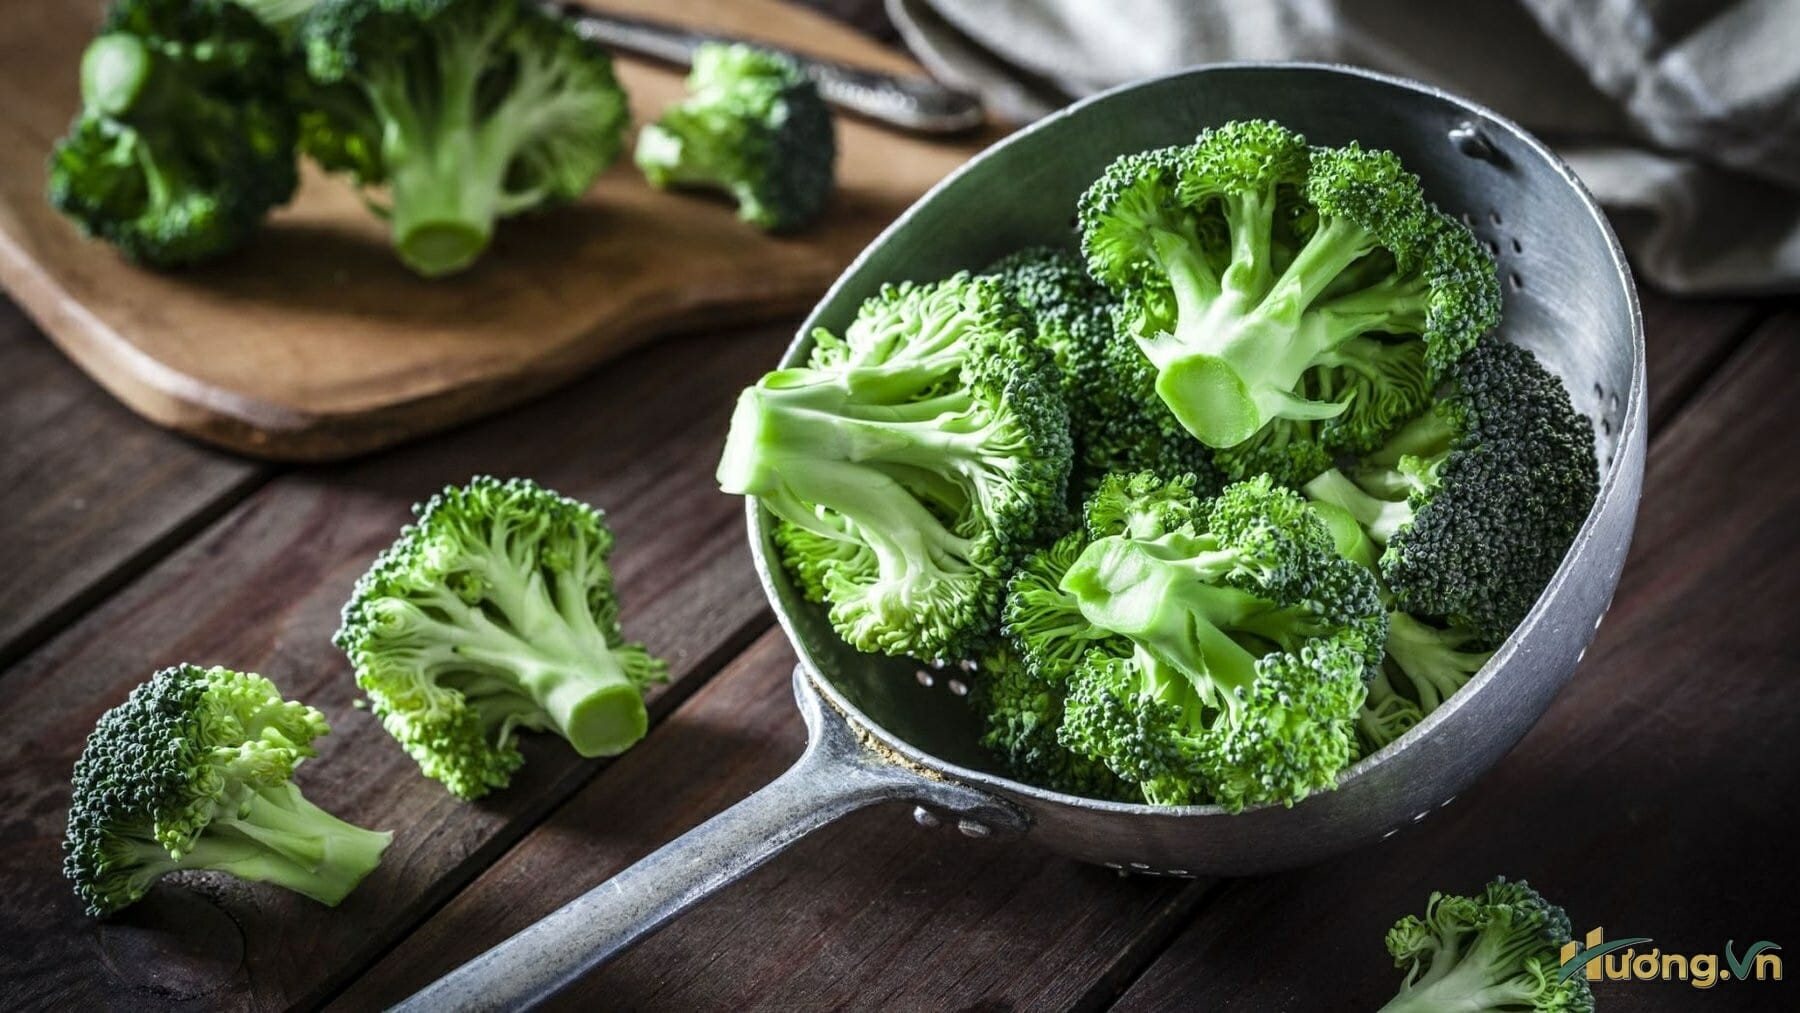 Bông cải xanh chứa lượng lớn vitamin như vitamin A, C, D và nhiều chất chống oxy hóa